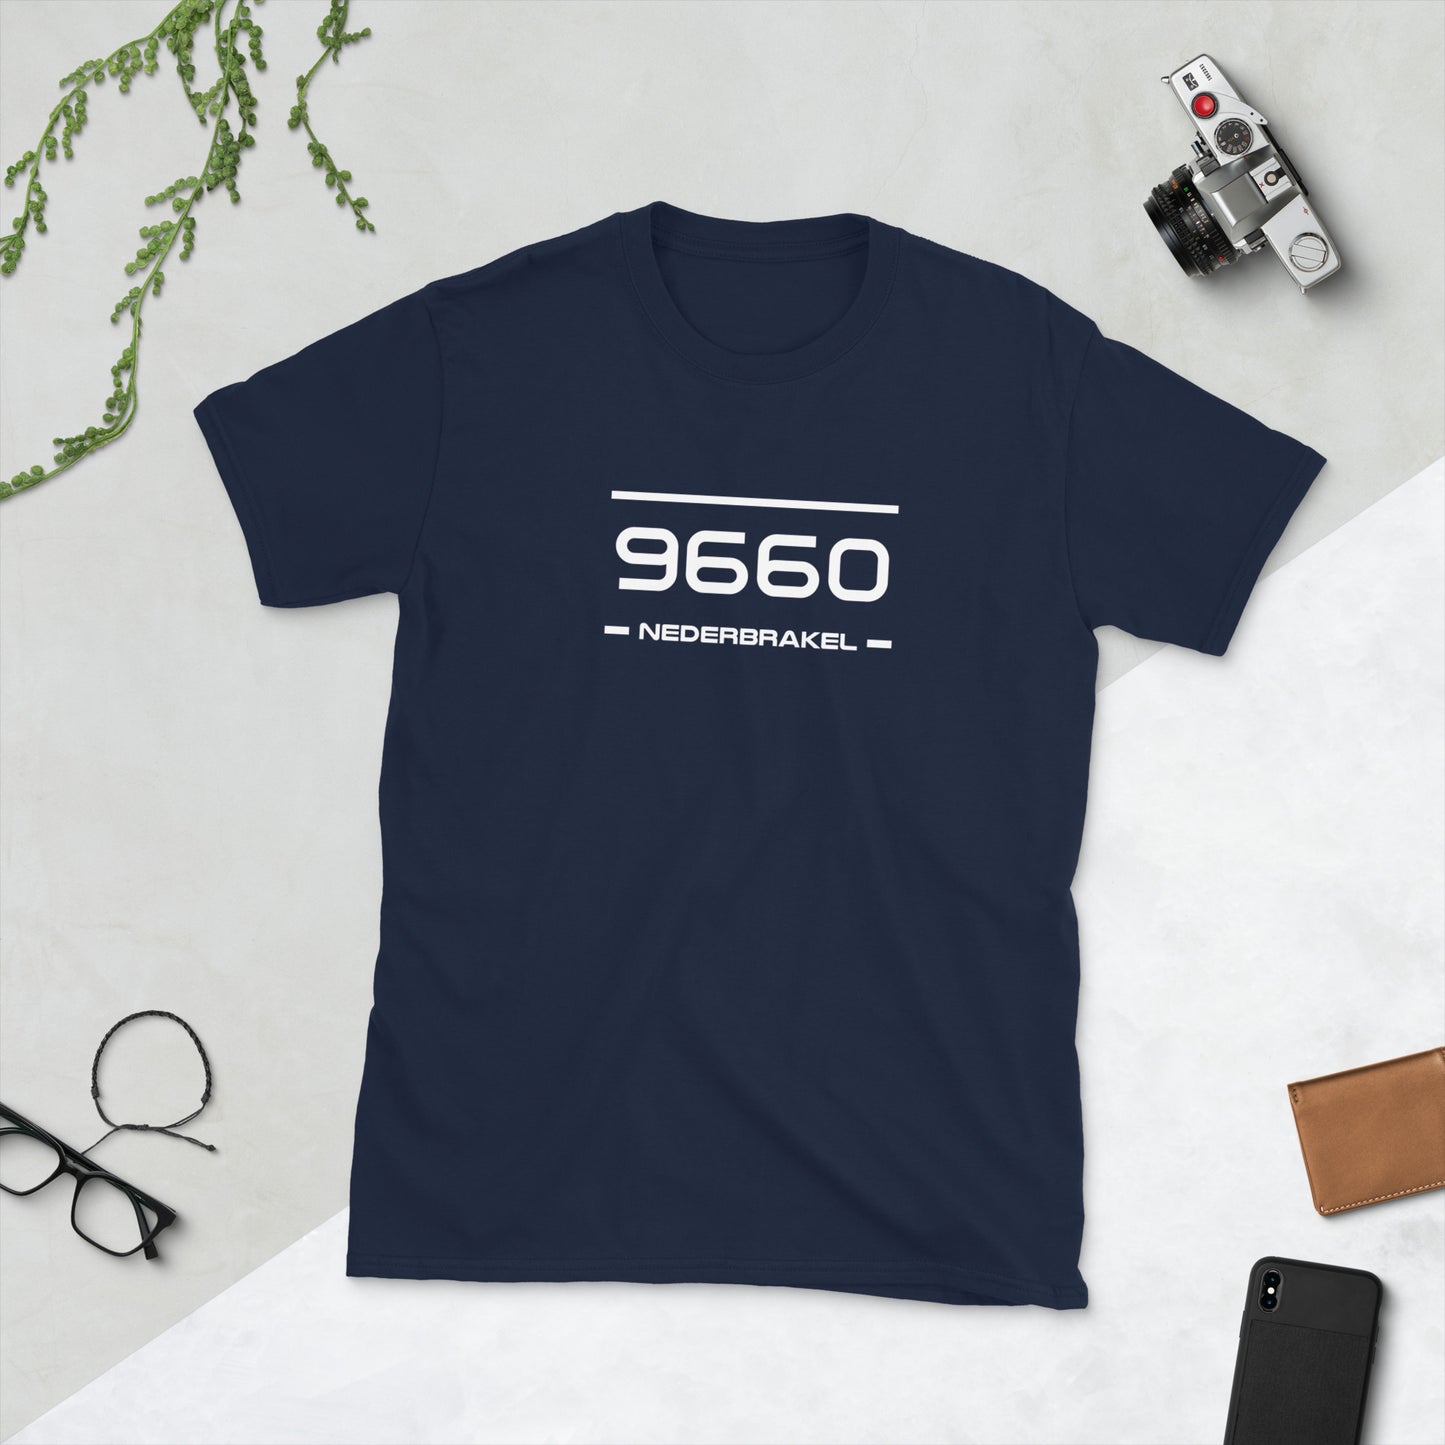 T-Shirt - 9660 - Nederbrakel